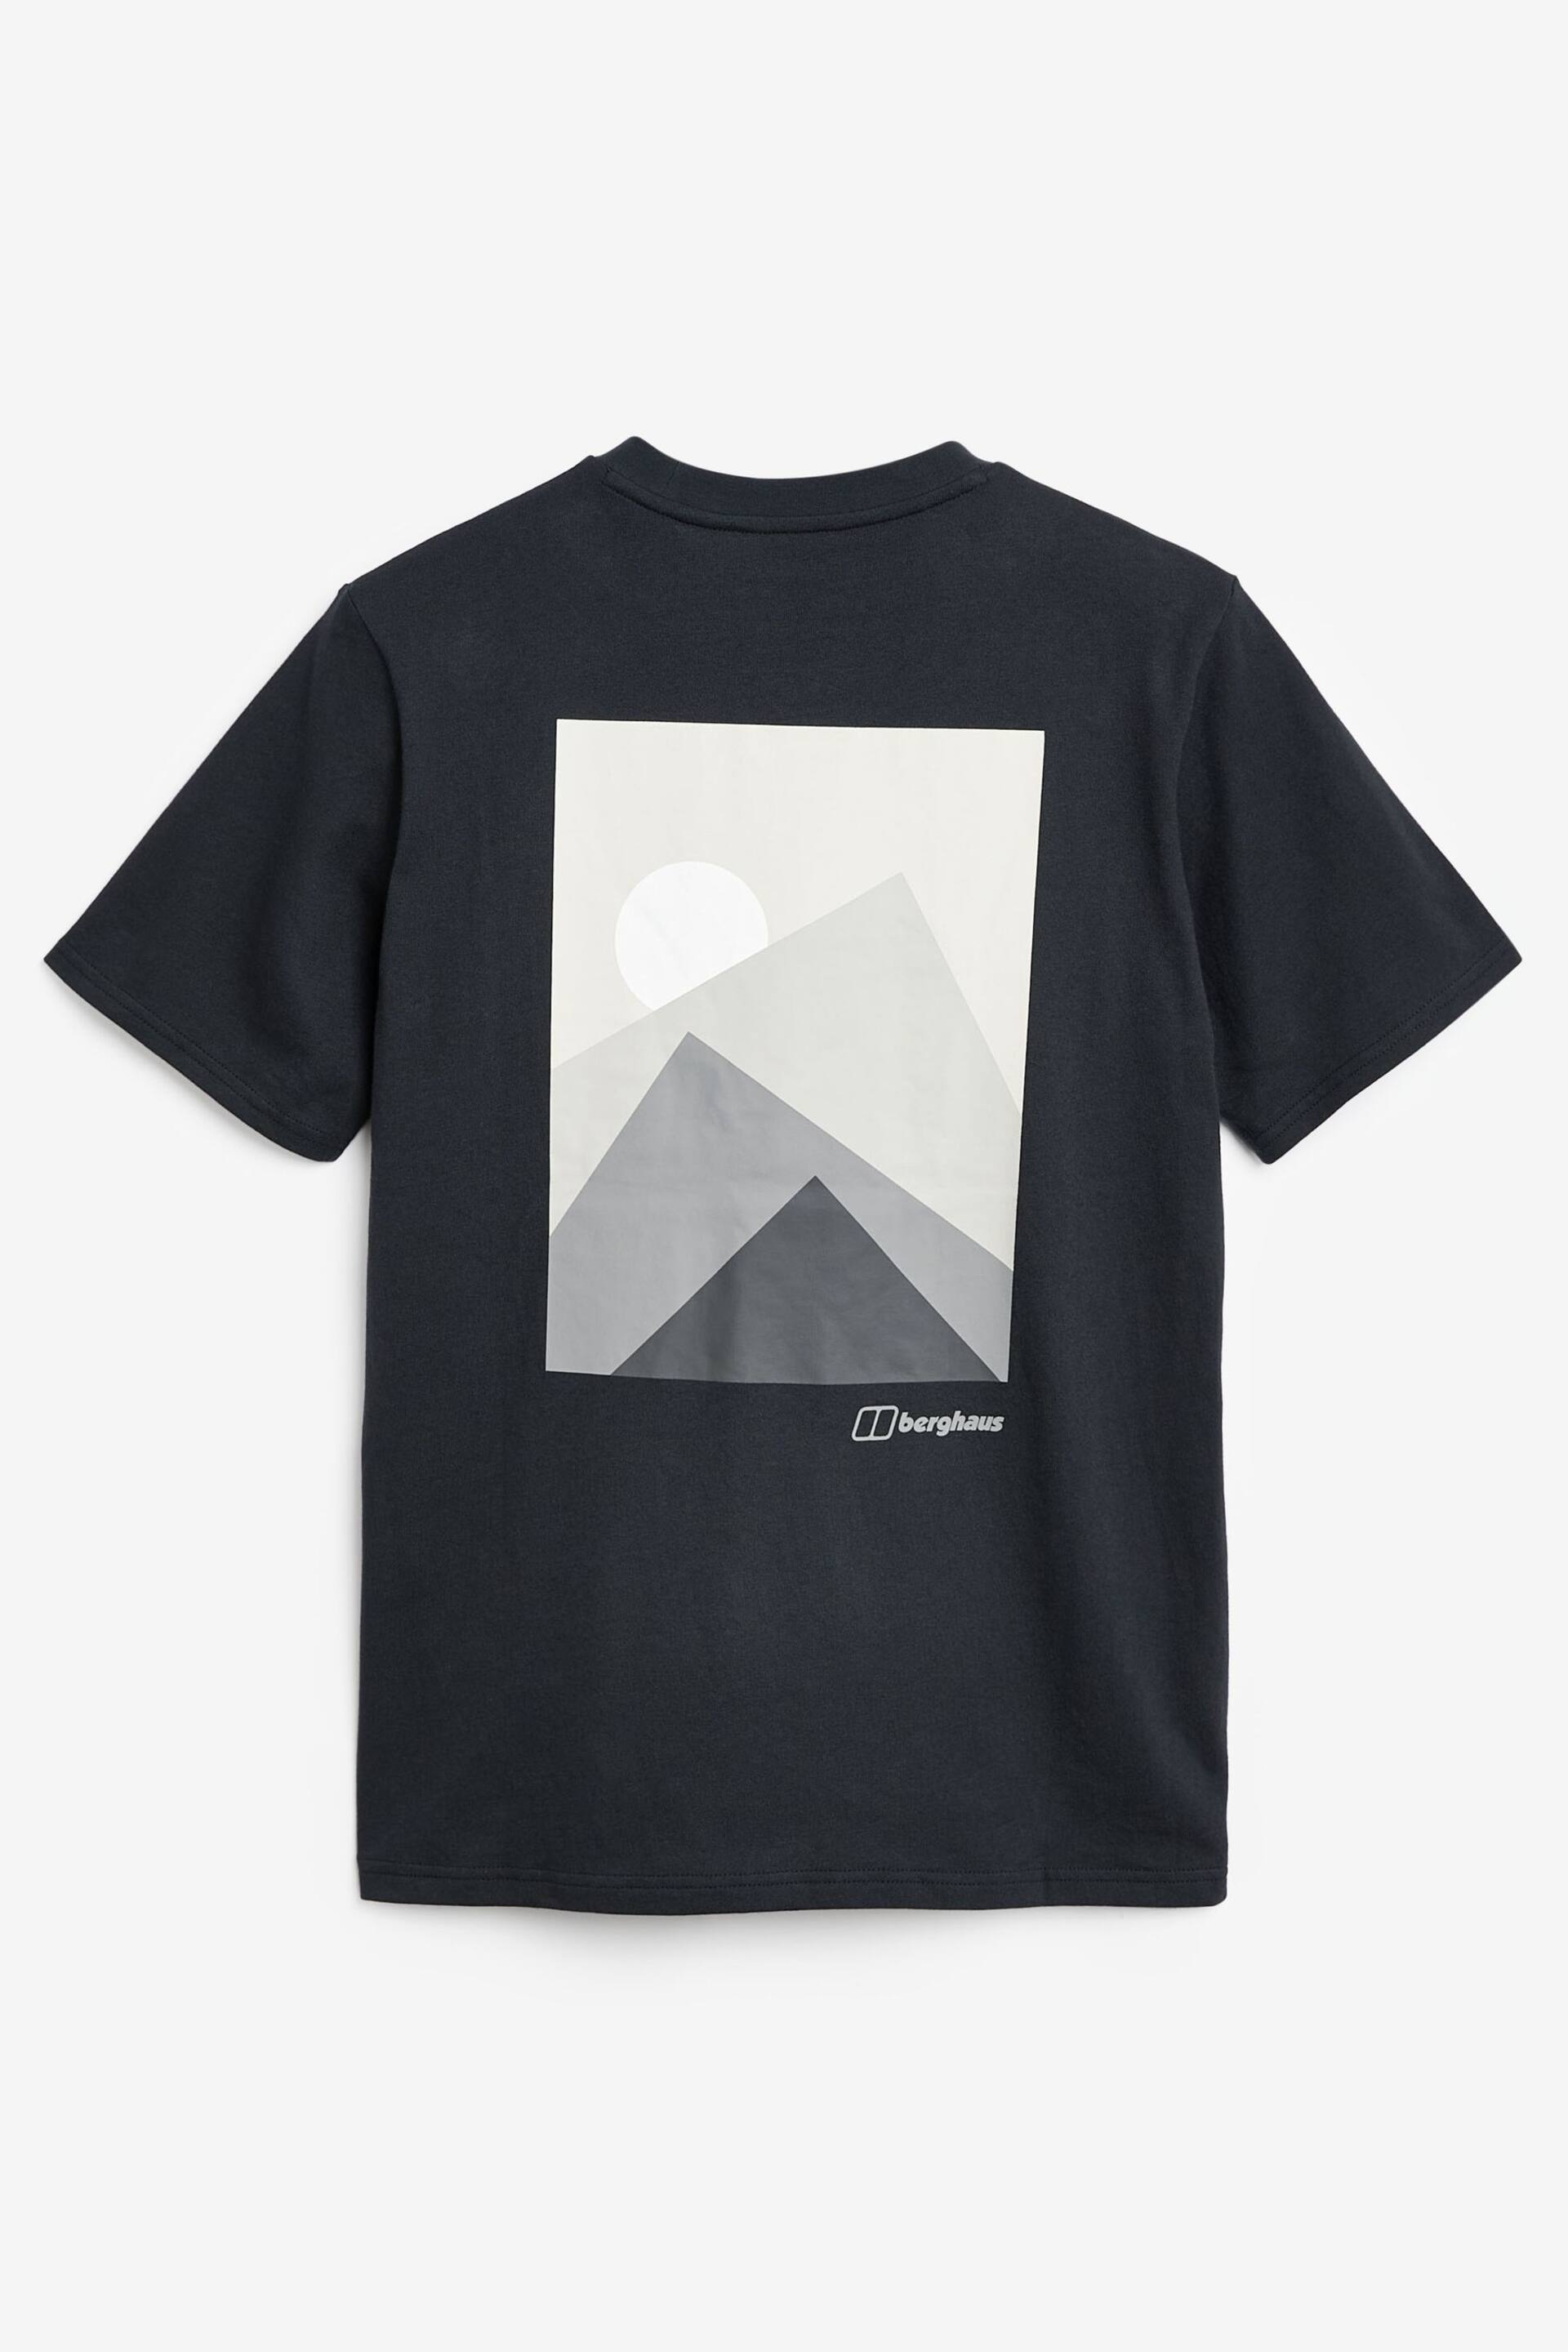 Berghaus Mountain Print T-Shirt - Image 4 of 4